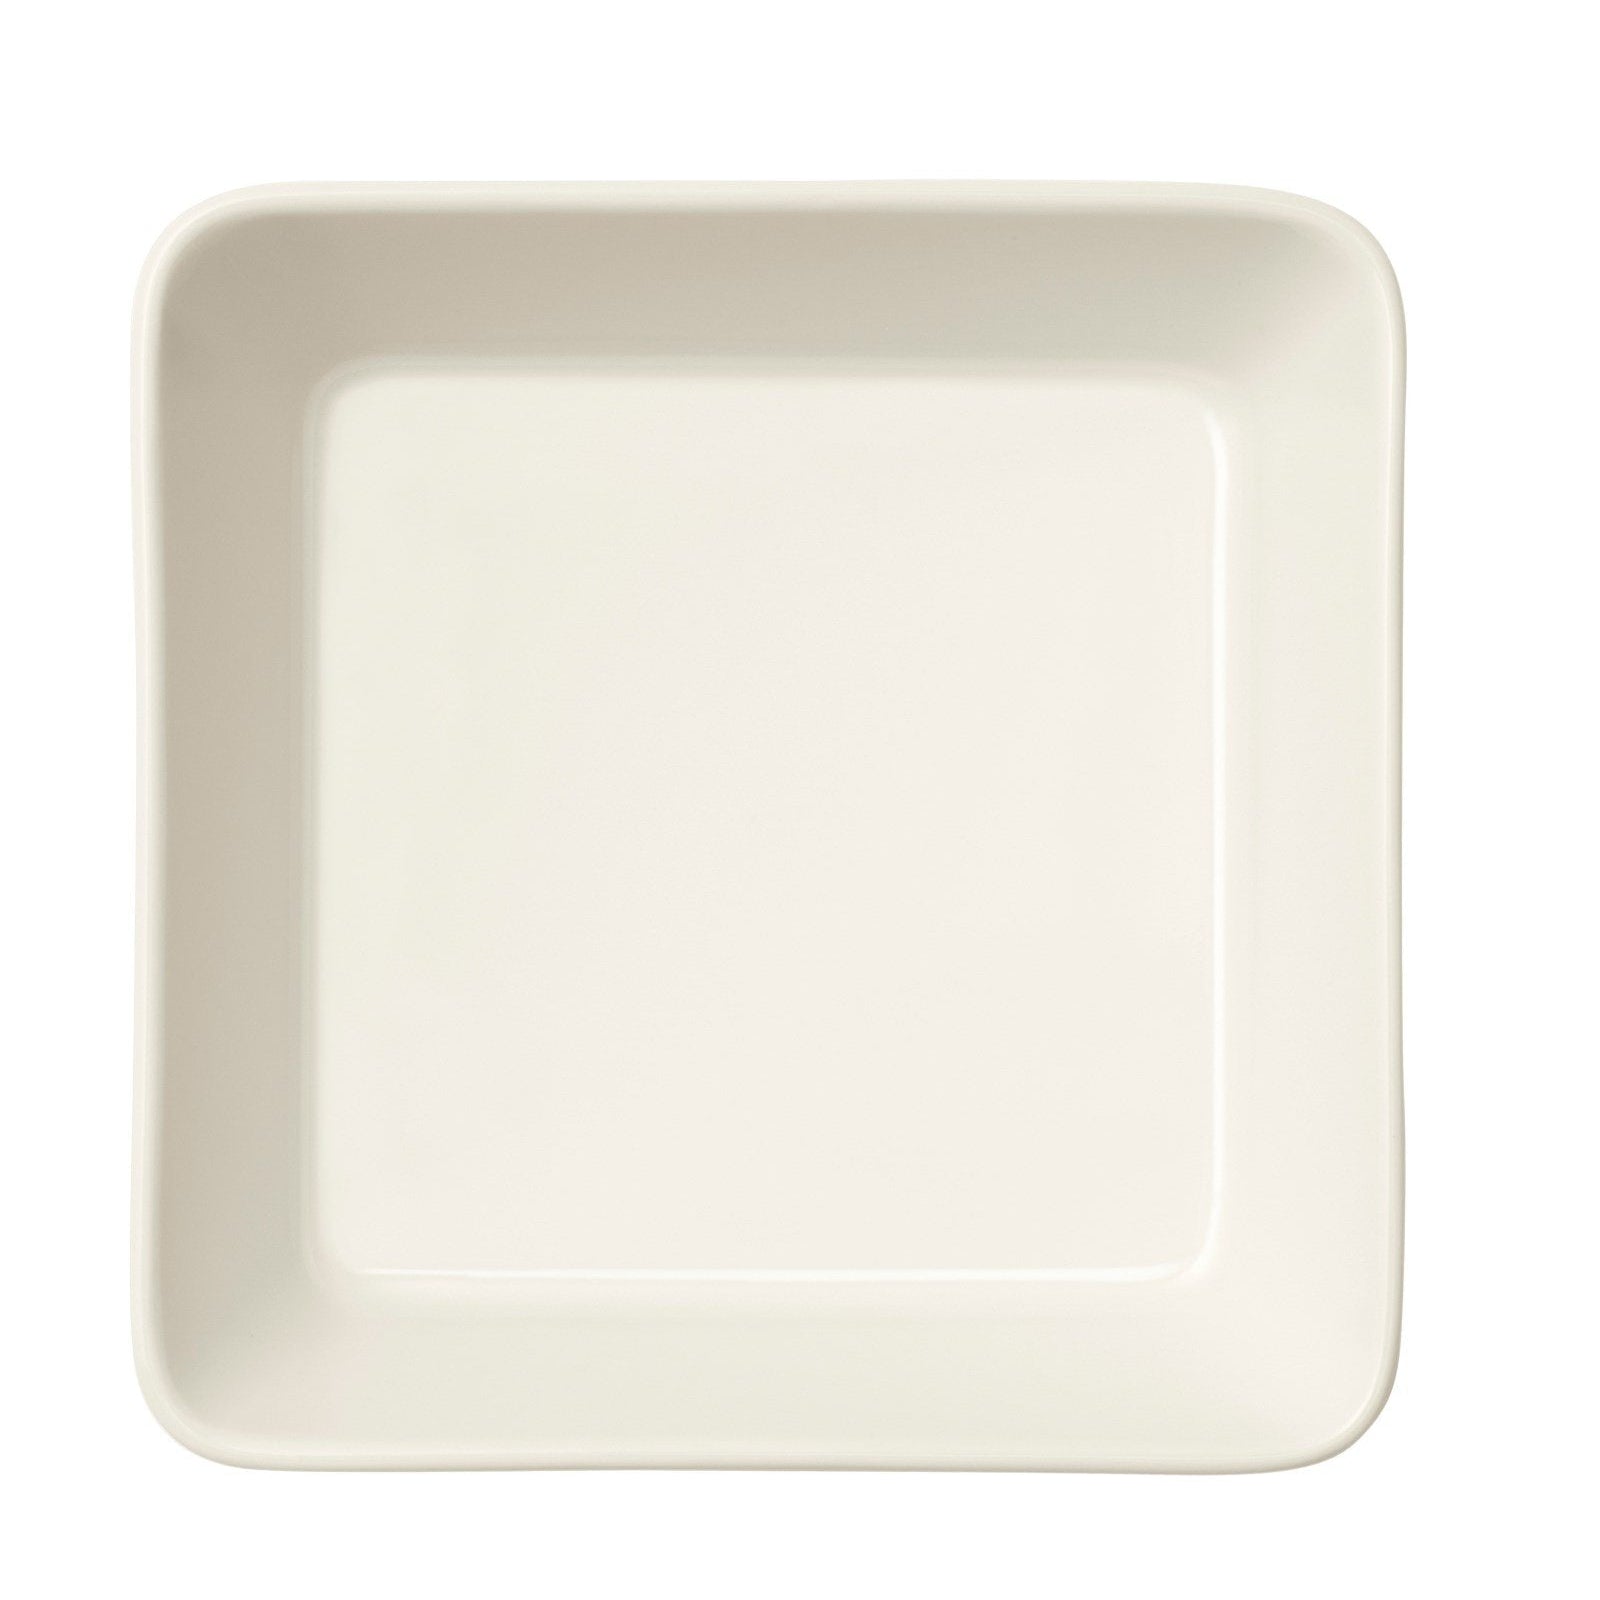 Iittala TEEMA Bowl blanc, 12x12cm